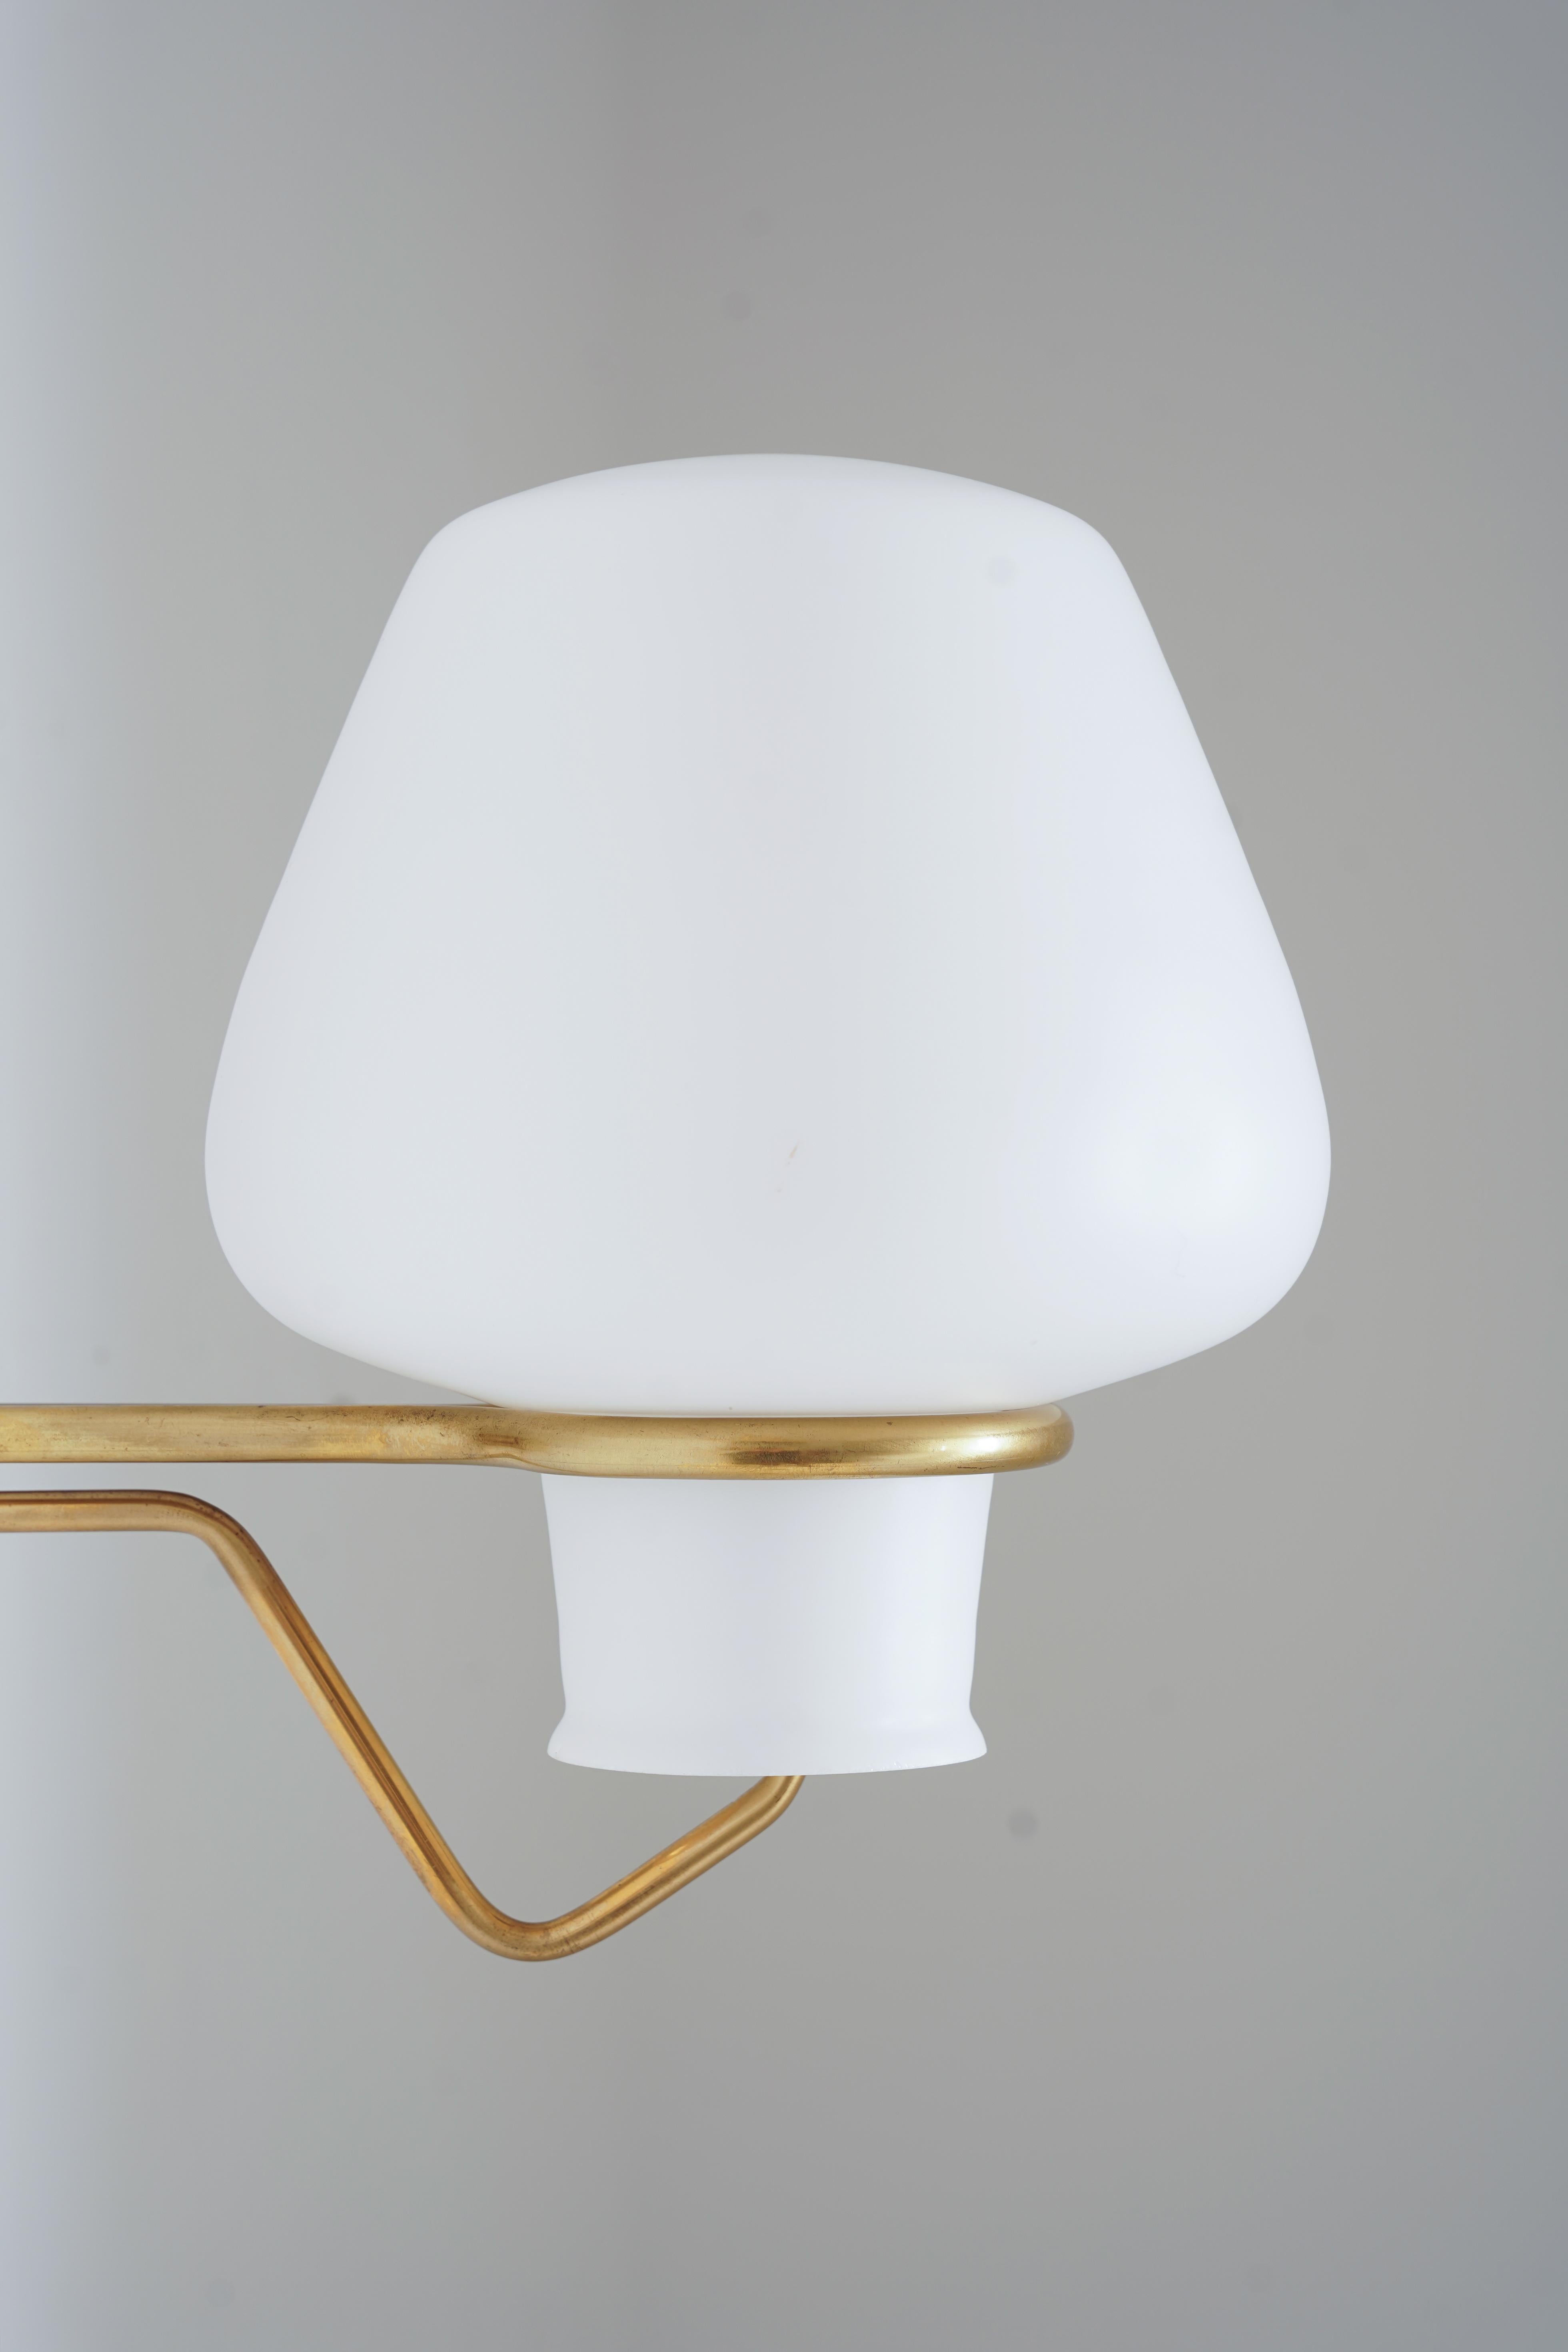 Brass Swedish Modern Wall Lamps by Gunnar Asplund for ASEA